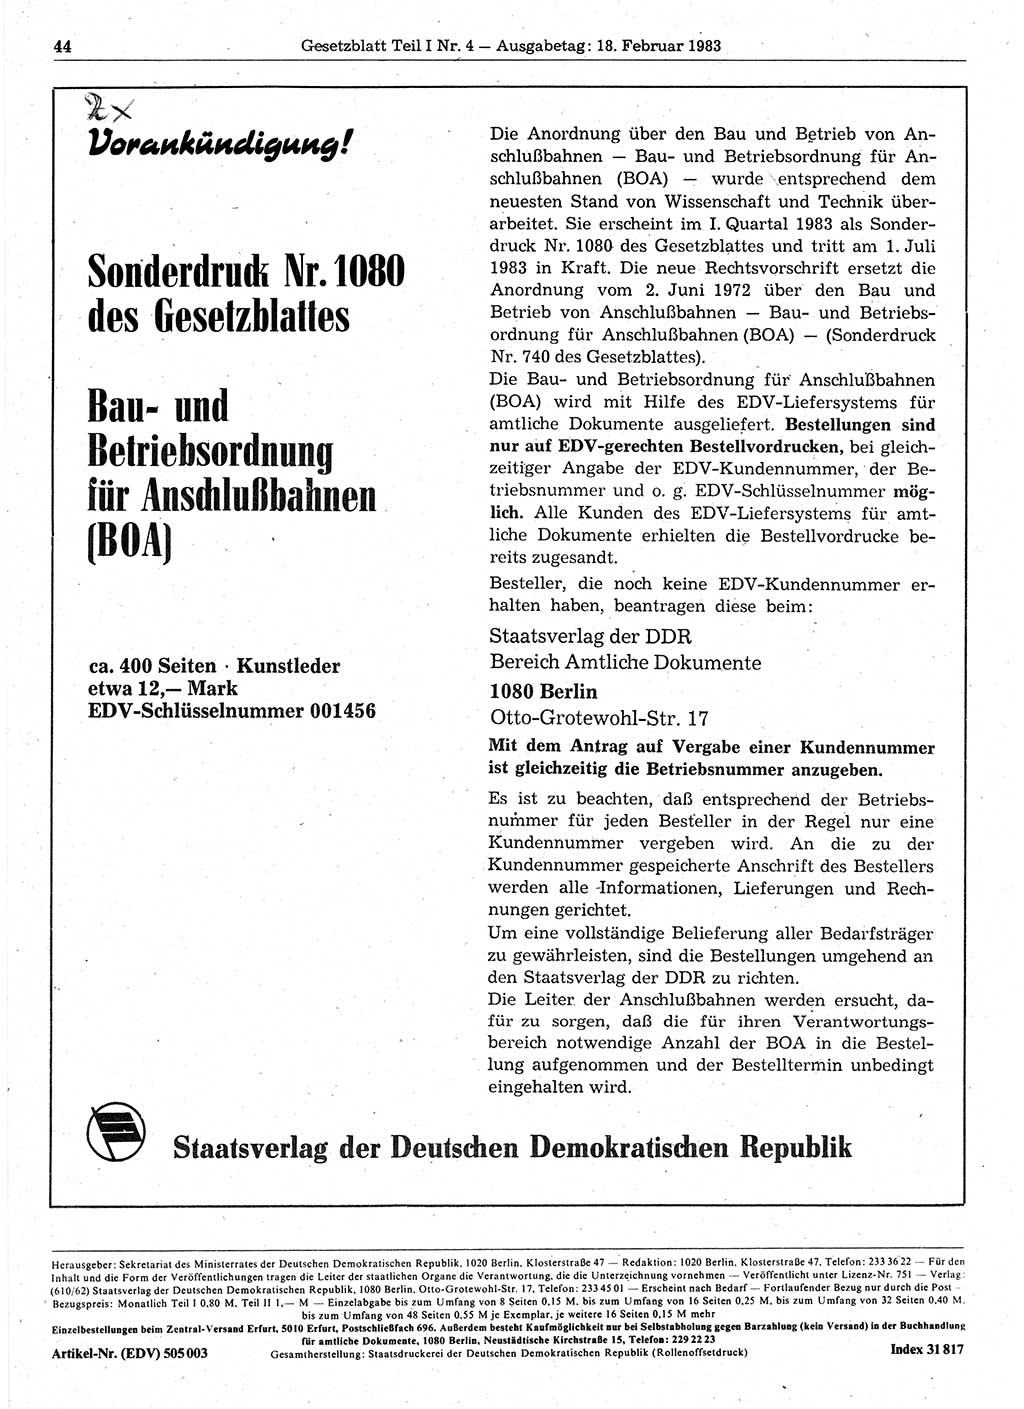 Gesetzblatt (GBl.) der Deutschen Demokratischen Republik (DDR) Teil Ⅰ 1983, Seite 44 (GBl. DDR Ⅰ 1983, S. 44)